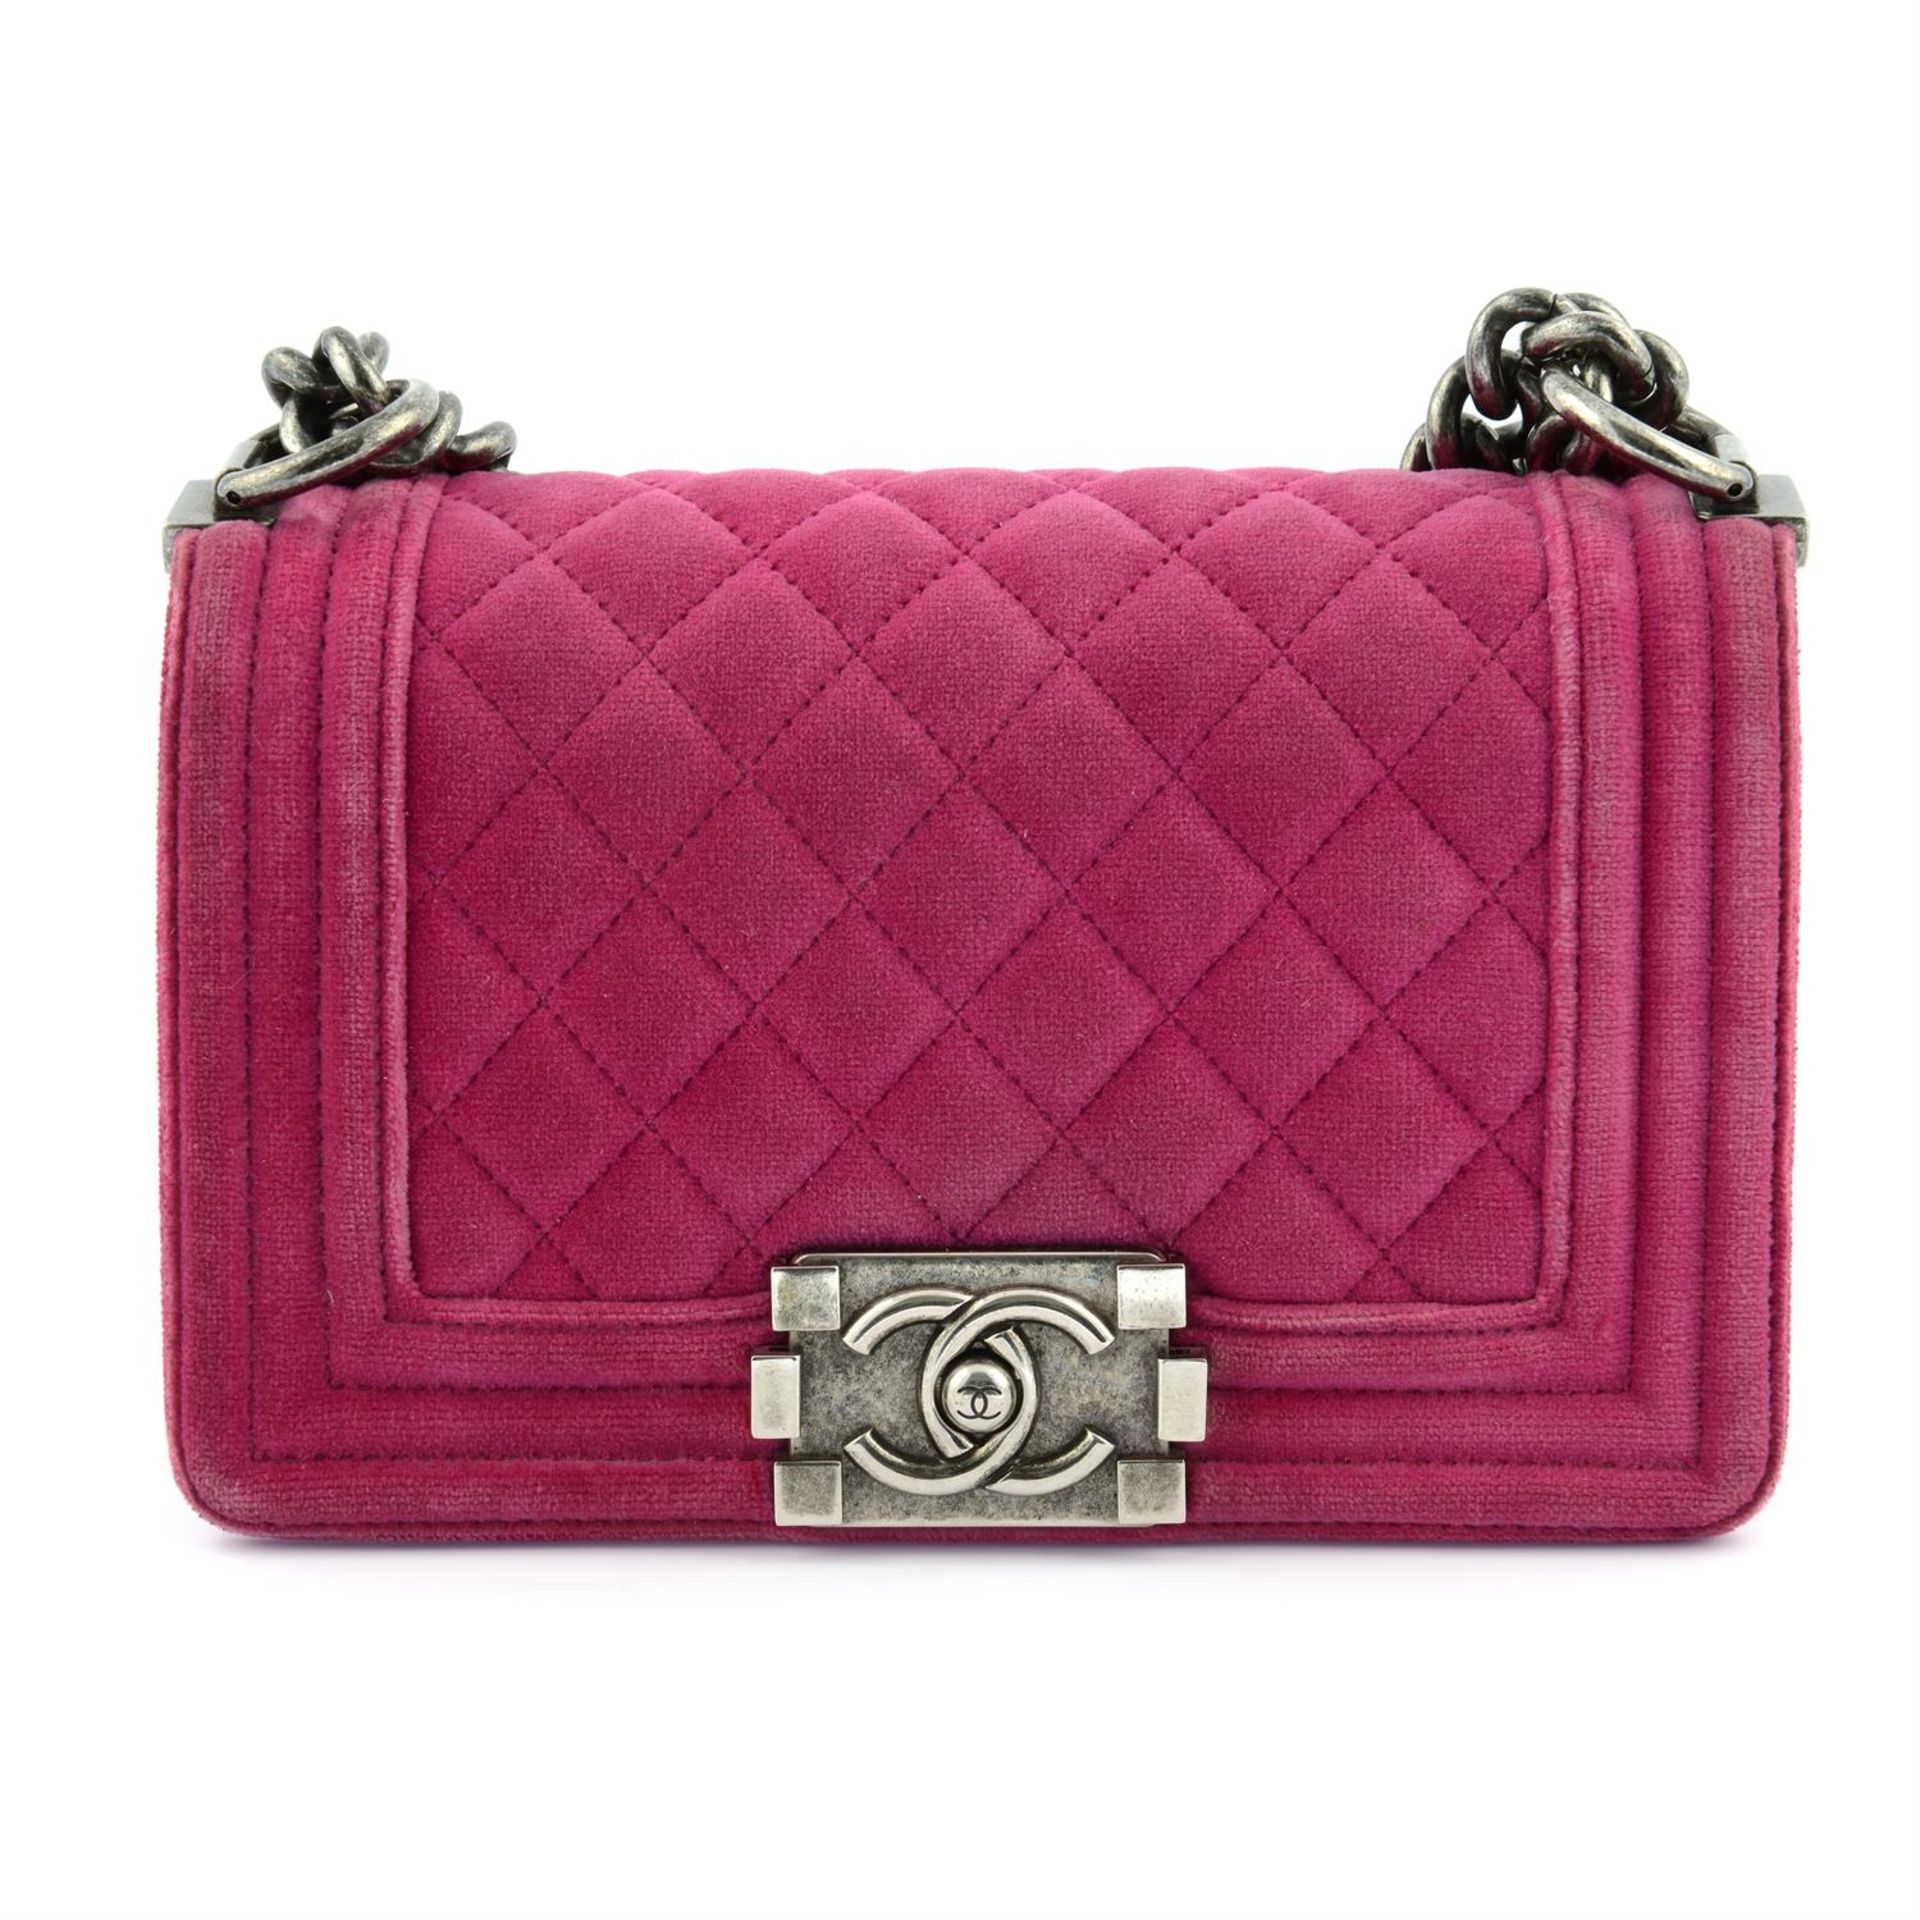 CHANEL - a pink velvet small Boy handbag.